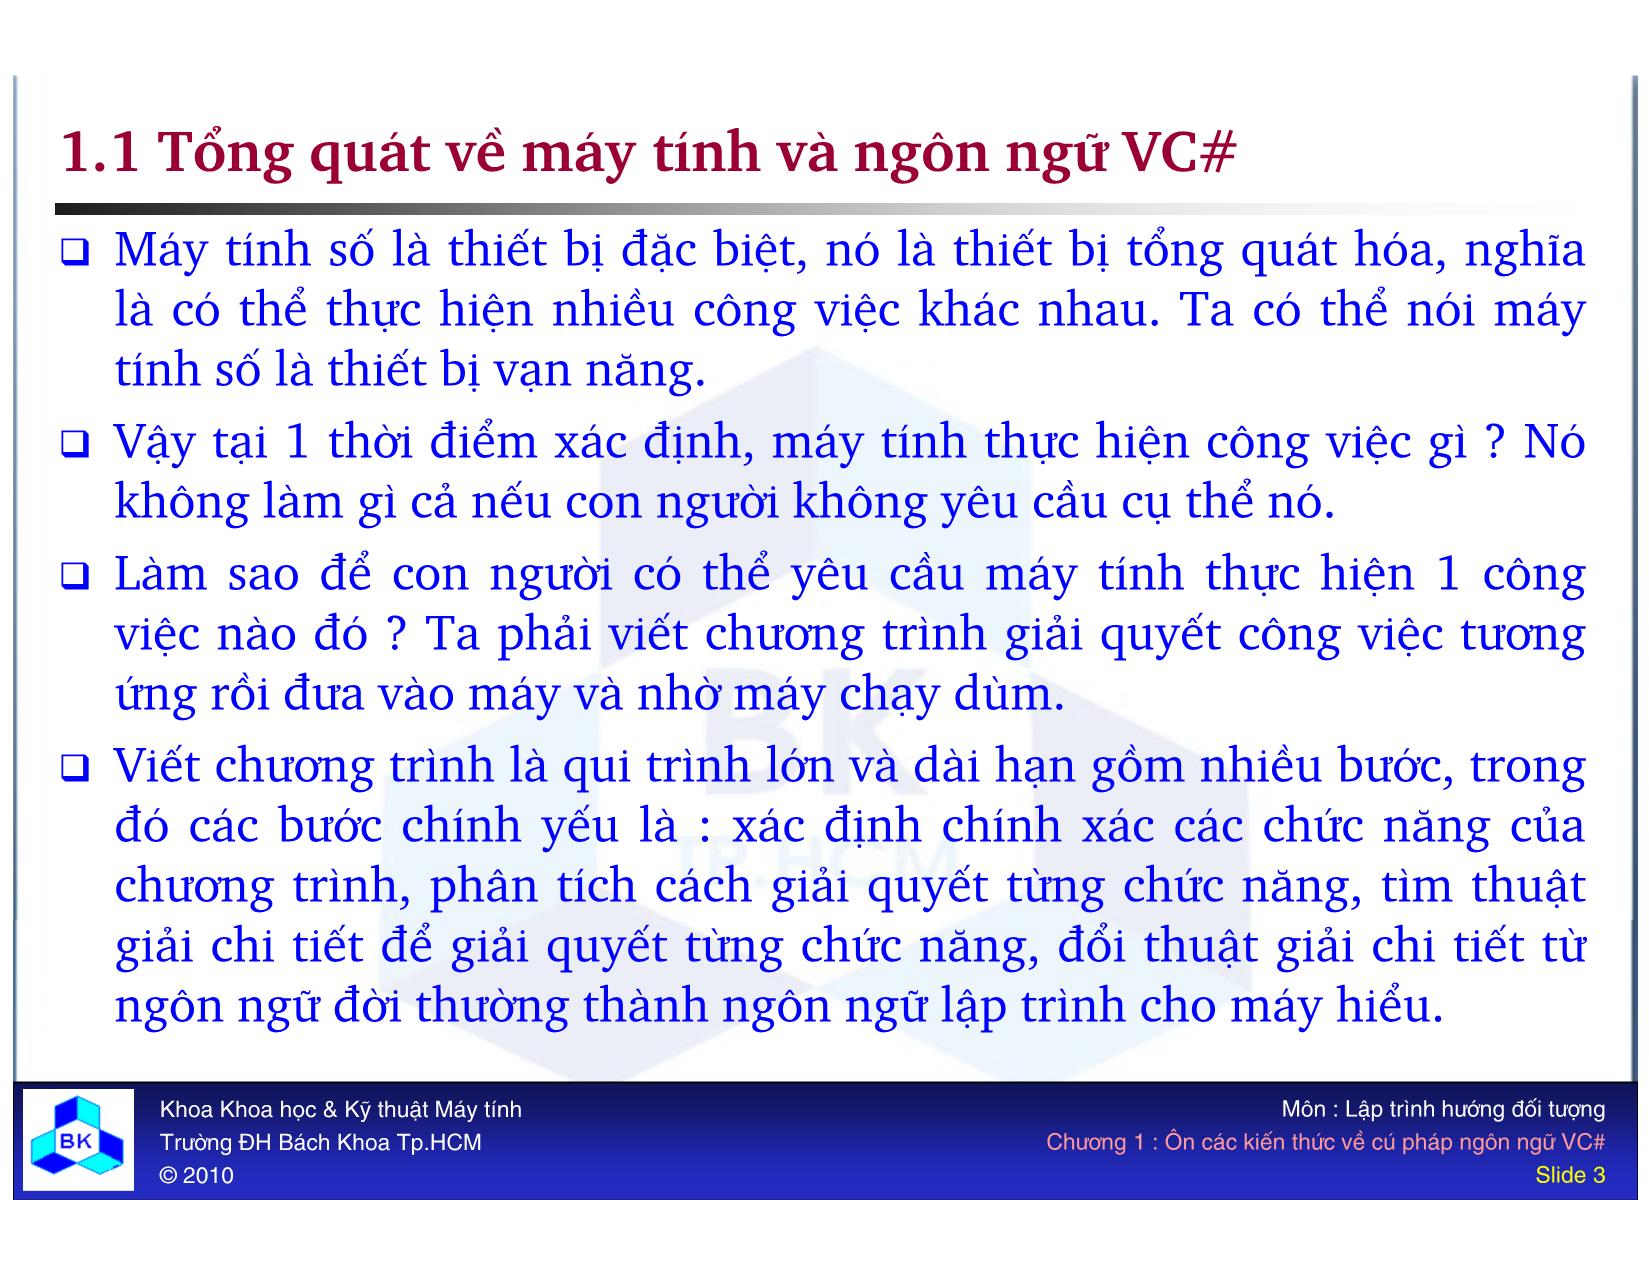 Bài giảng Lập trình hướng đối tượng - Chương 1: Ôn các kiến thức về cú pháp ngôn ngữ VC# trang 3